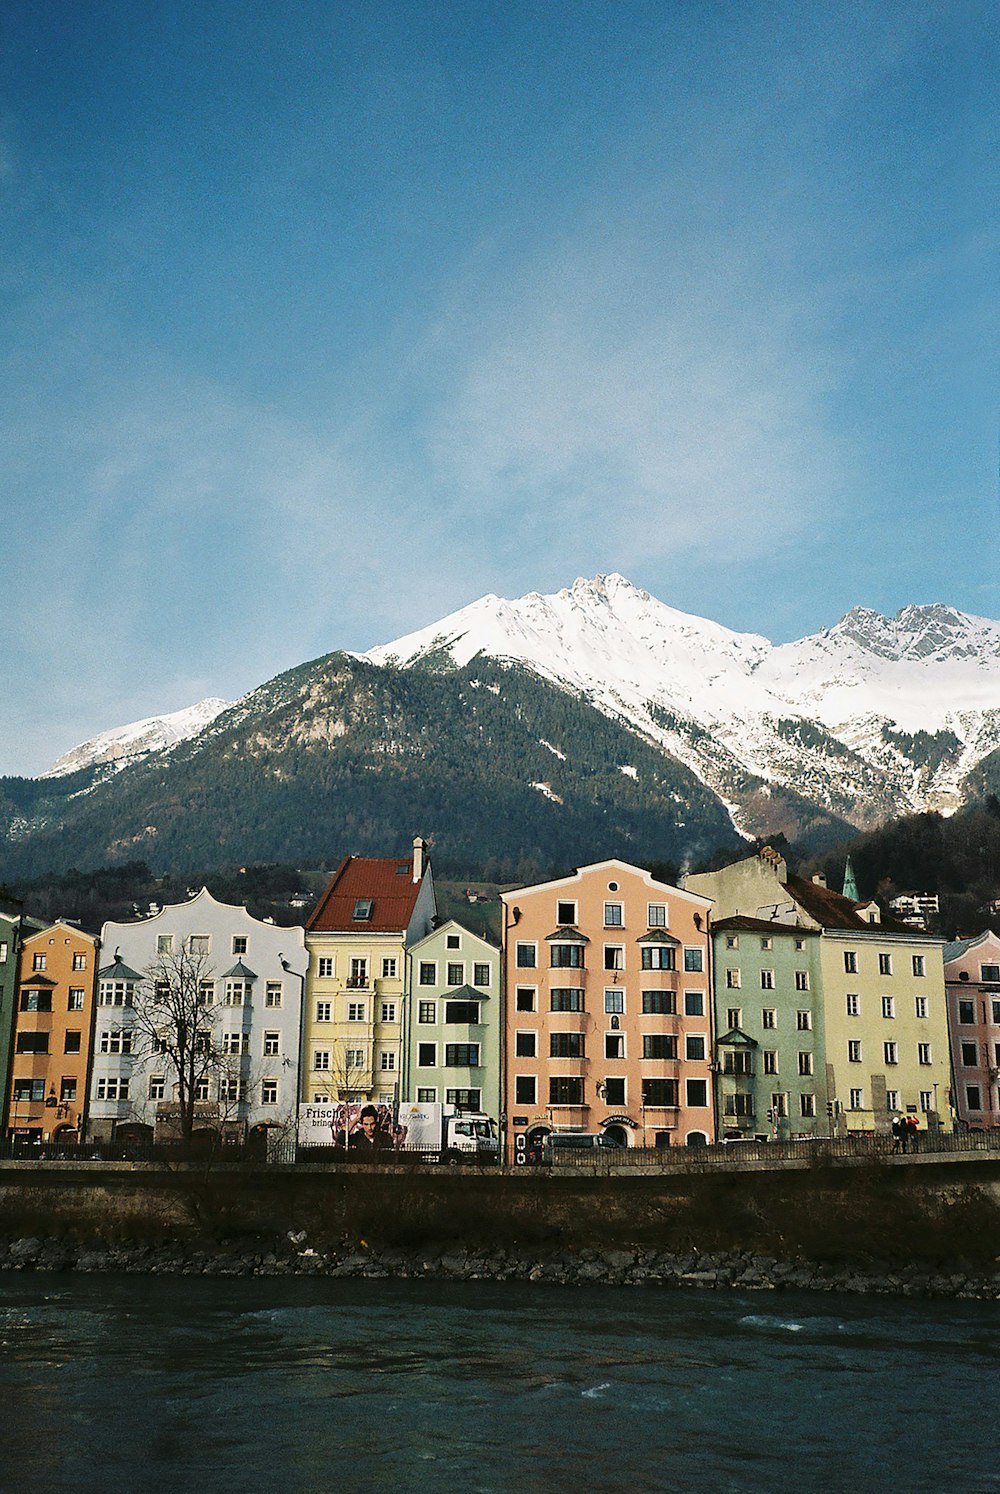 edifícios de concreto branco e marrom perto da montanha coberta de neve durante o dia